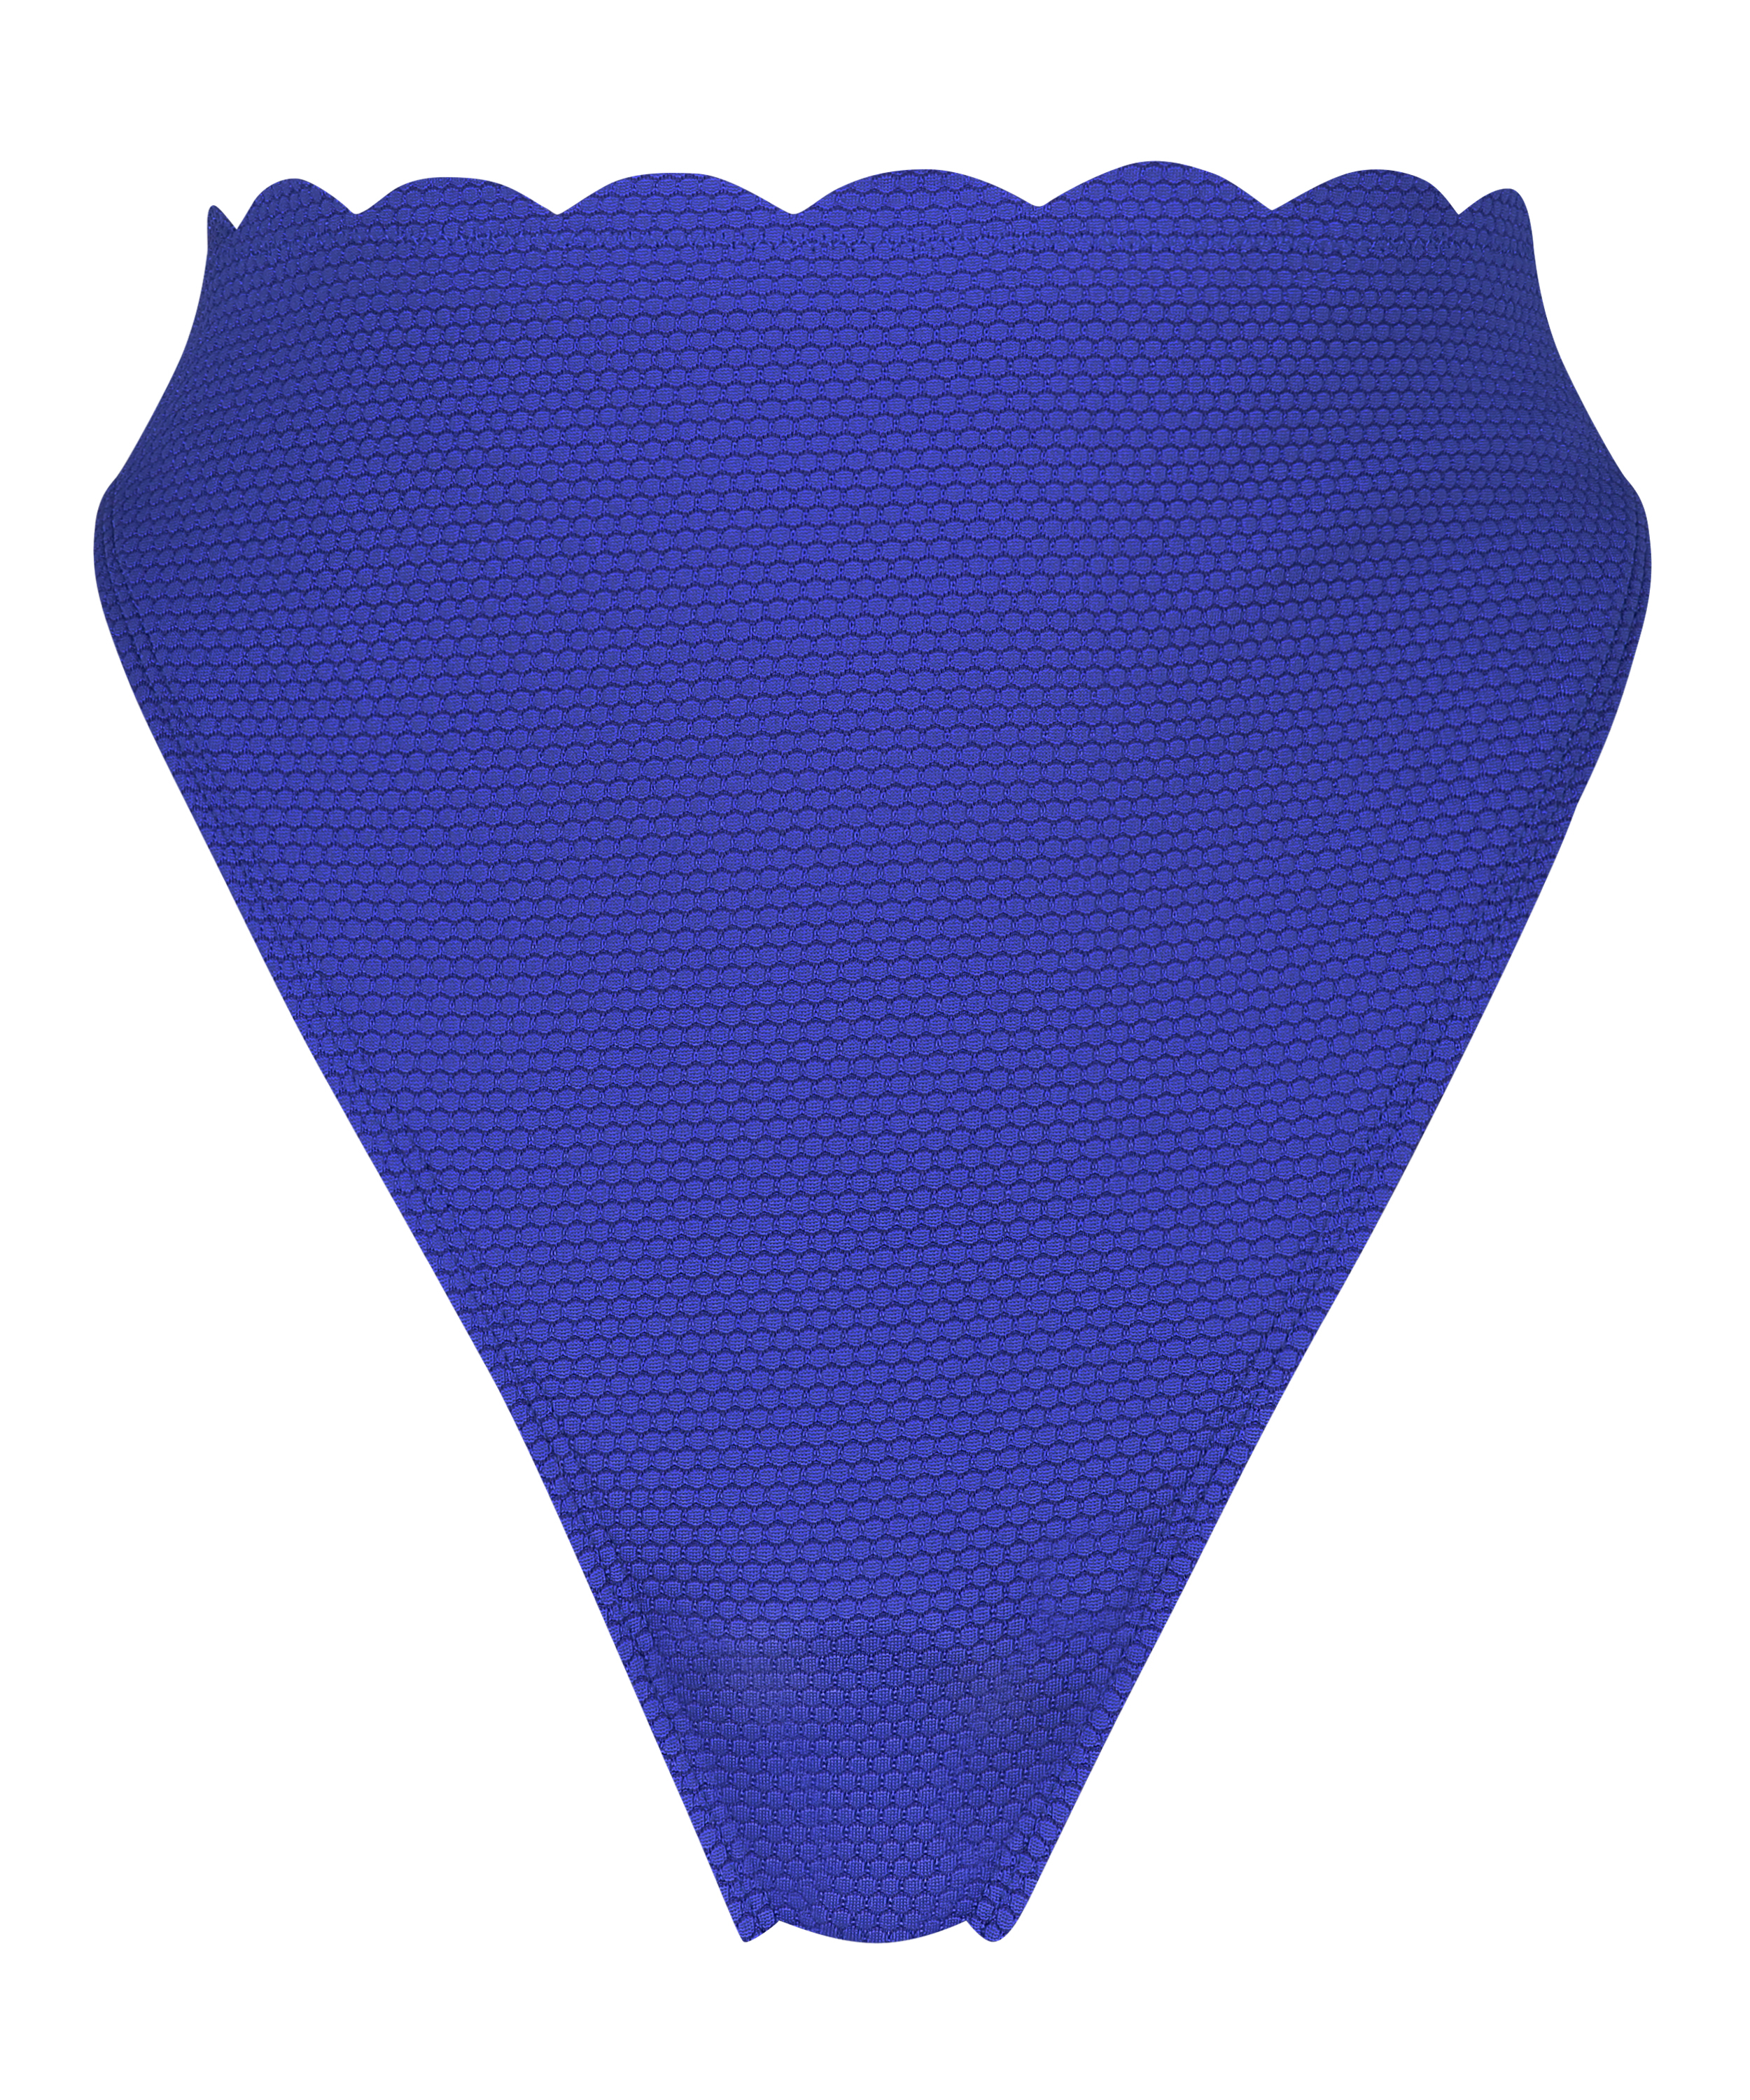 Bikini-Slip mit hohem Beinausschnitt Scallop, Blau, main